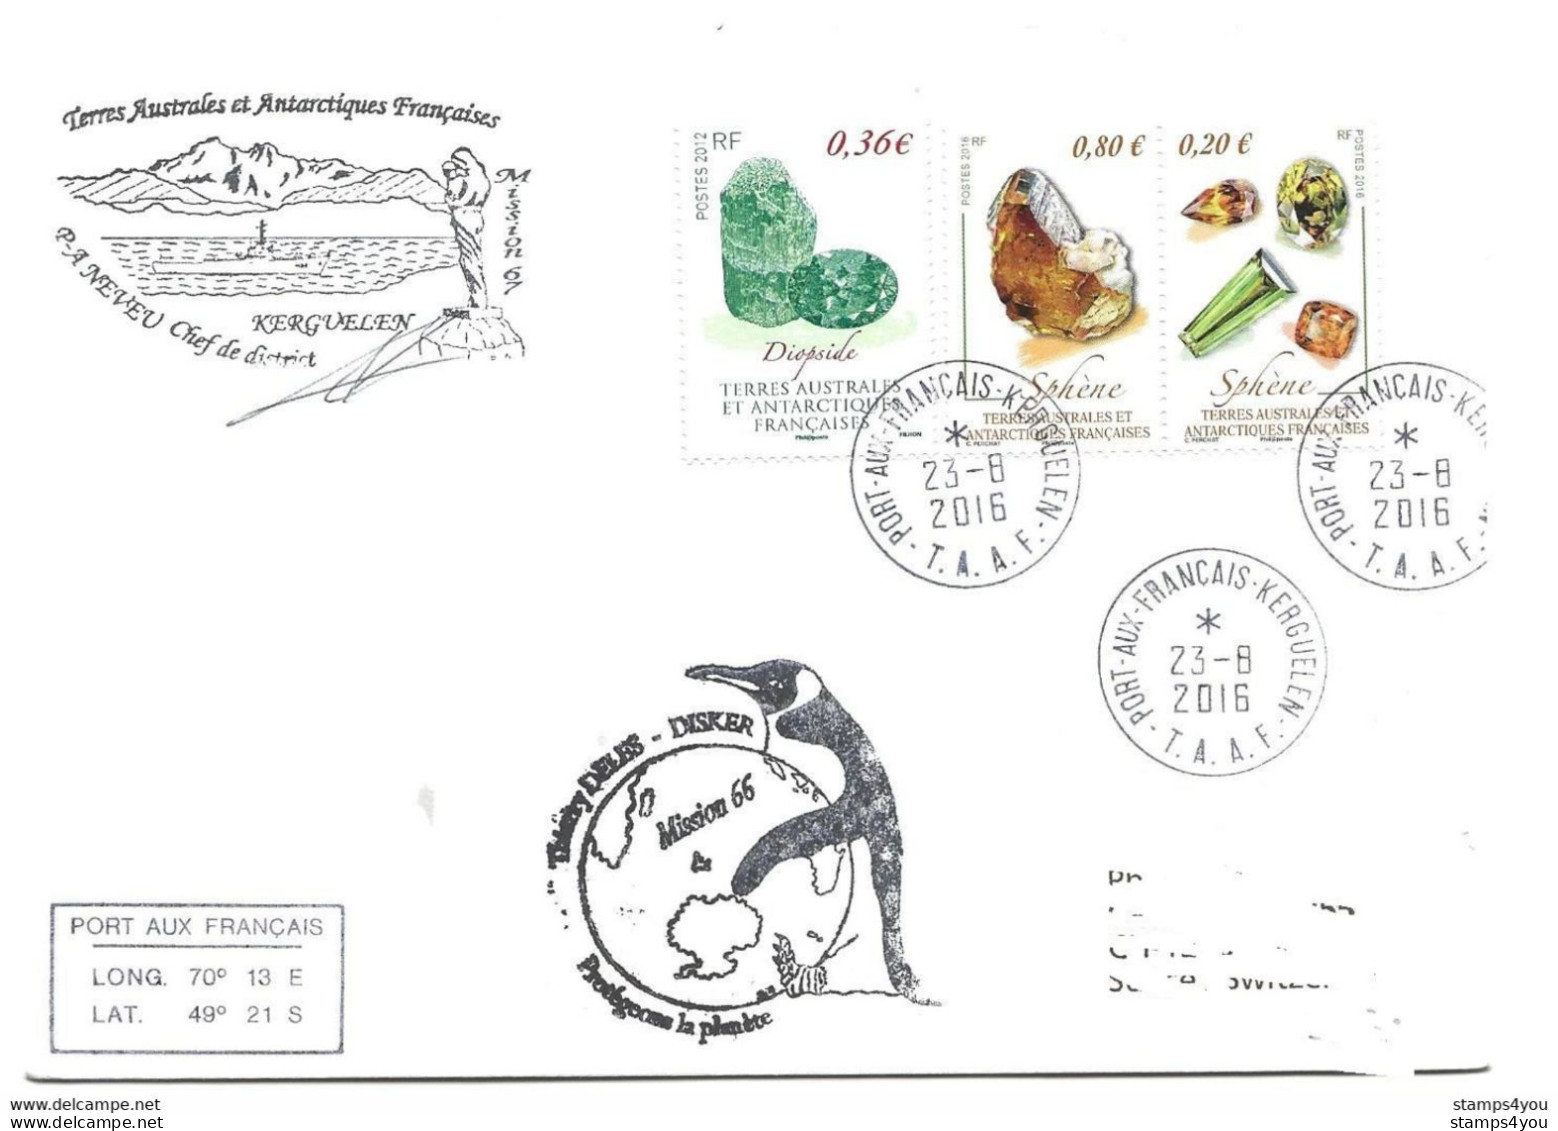 47 - 89 - Enveloppe TAAF Kerguelen - 3 Timbres Minéraux - Cachets Illustré Missions 66-67 - Minéraux